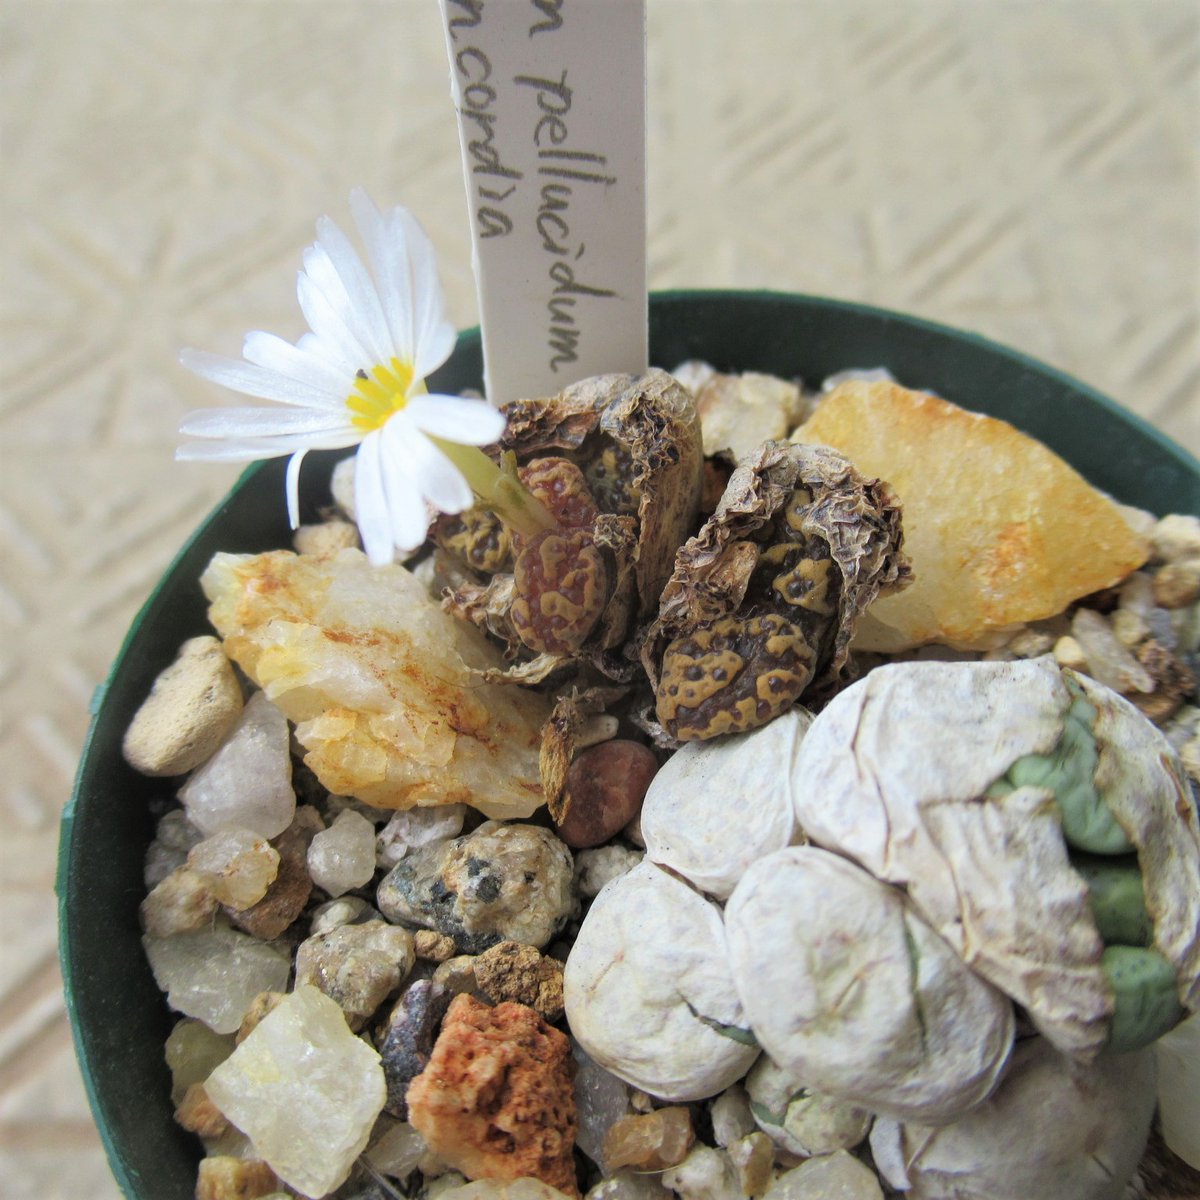 たわし集め Tawashi Atsume 石のような葉から花 𝑪𝒐𝒏𝒐𝒑𝒉𝒚𝒕𝒖𝒎 𝒑𝒆𝒍𝒍𝒖𝒄𝒊𝒅𝒖𝒎 Ssp 𝒑𝒆𝒍𝒍𝒖𝒄𝒊𝒅𝒖𝒎 Var 𝒕𝒆𝒓𝒓𝒊𝒄𝒐𝒍𝒐𝒓 Rsa Northern Cape 5 Km E Of Concordia 茶色い小石のようだけど 花が咲くと植物だとわかる